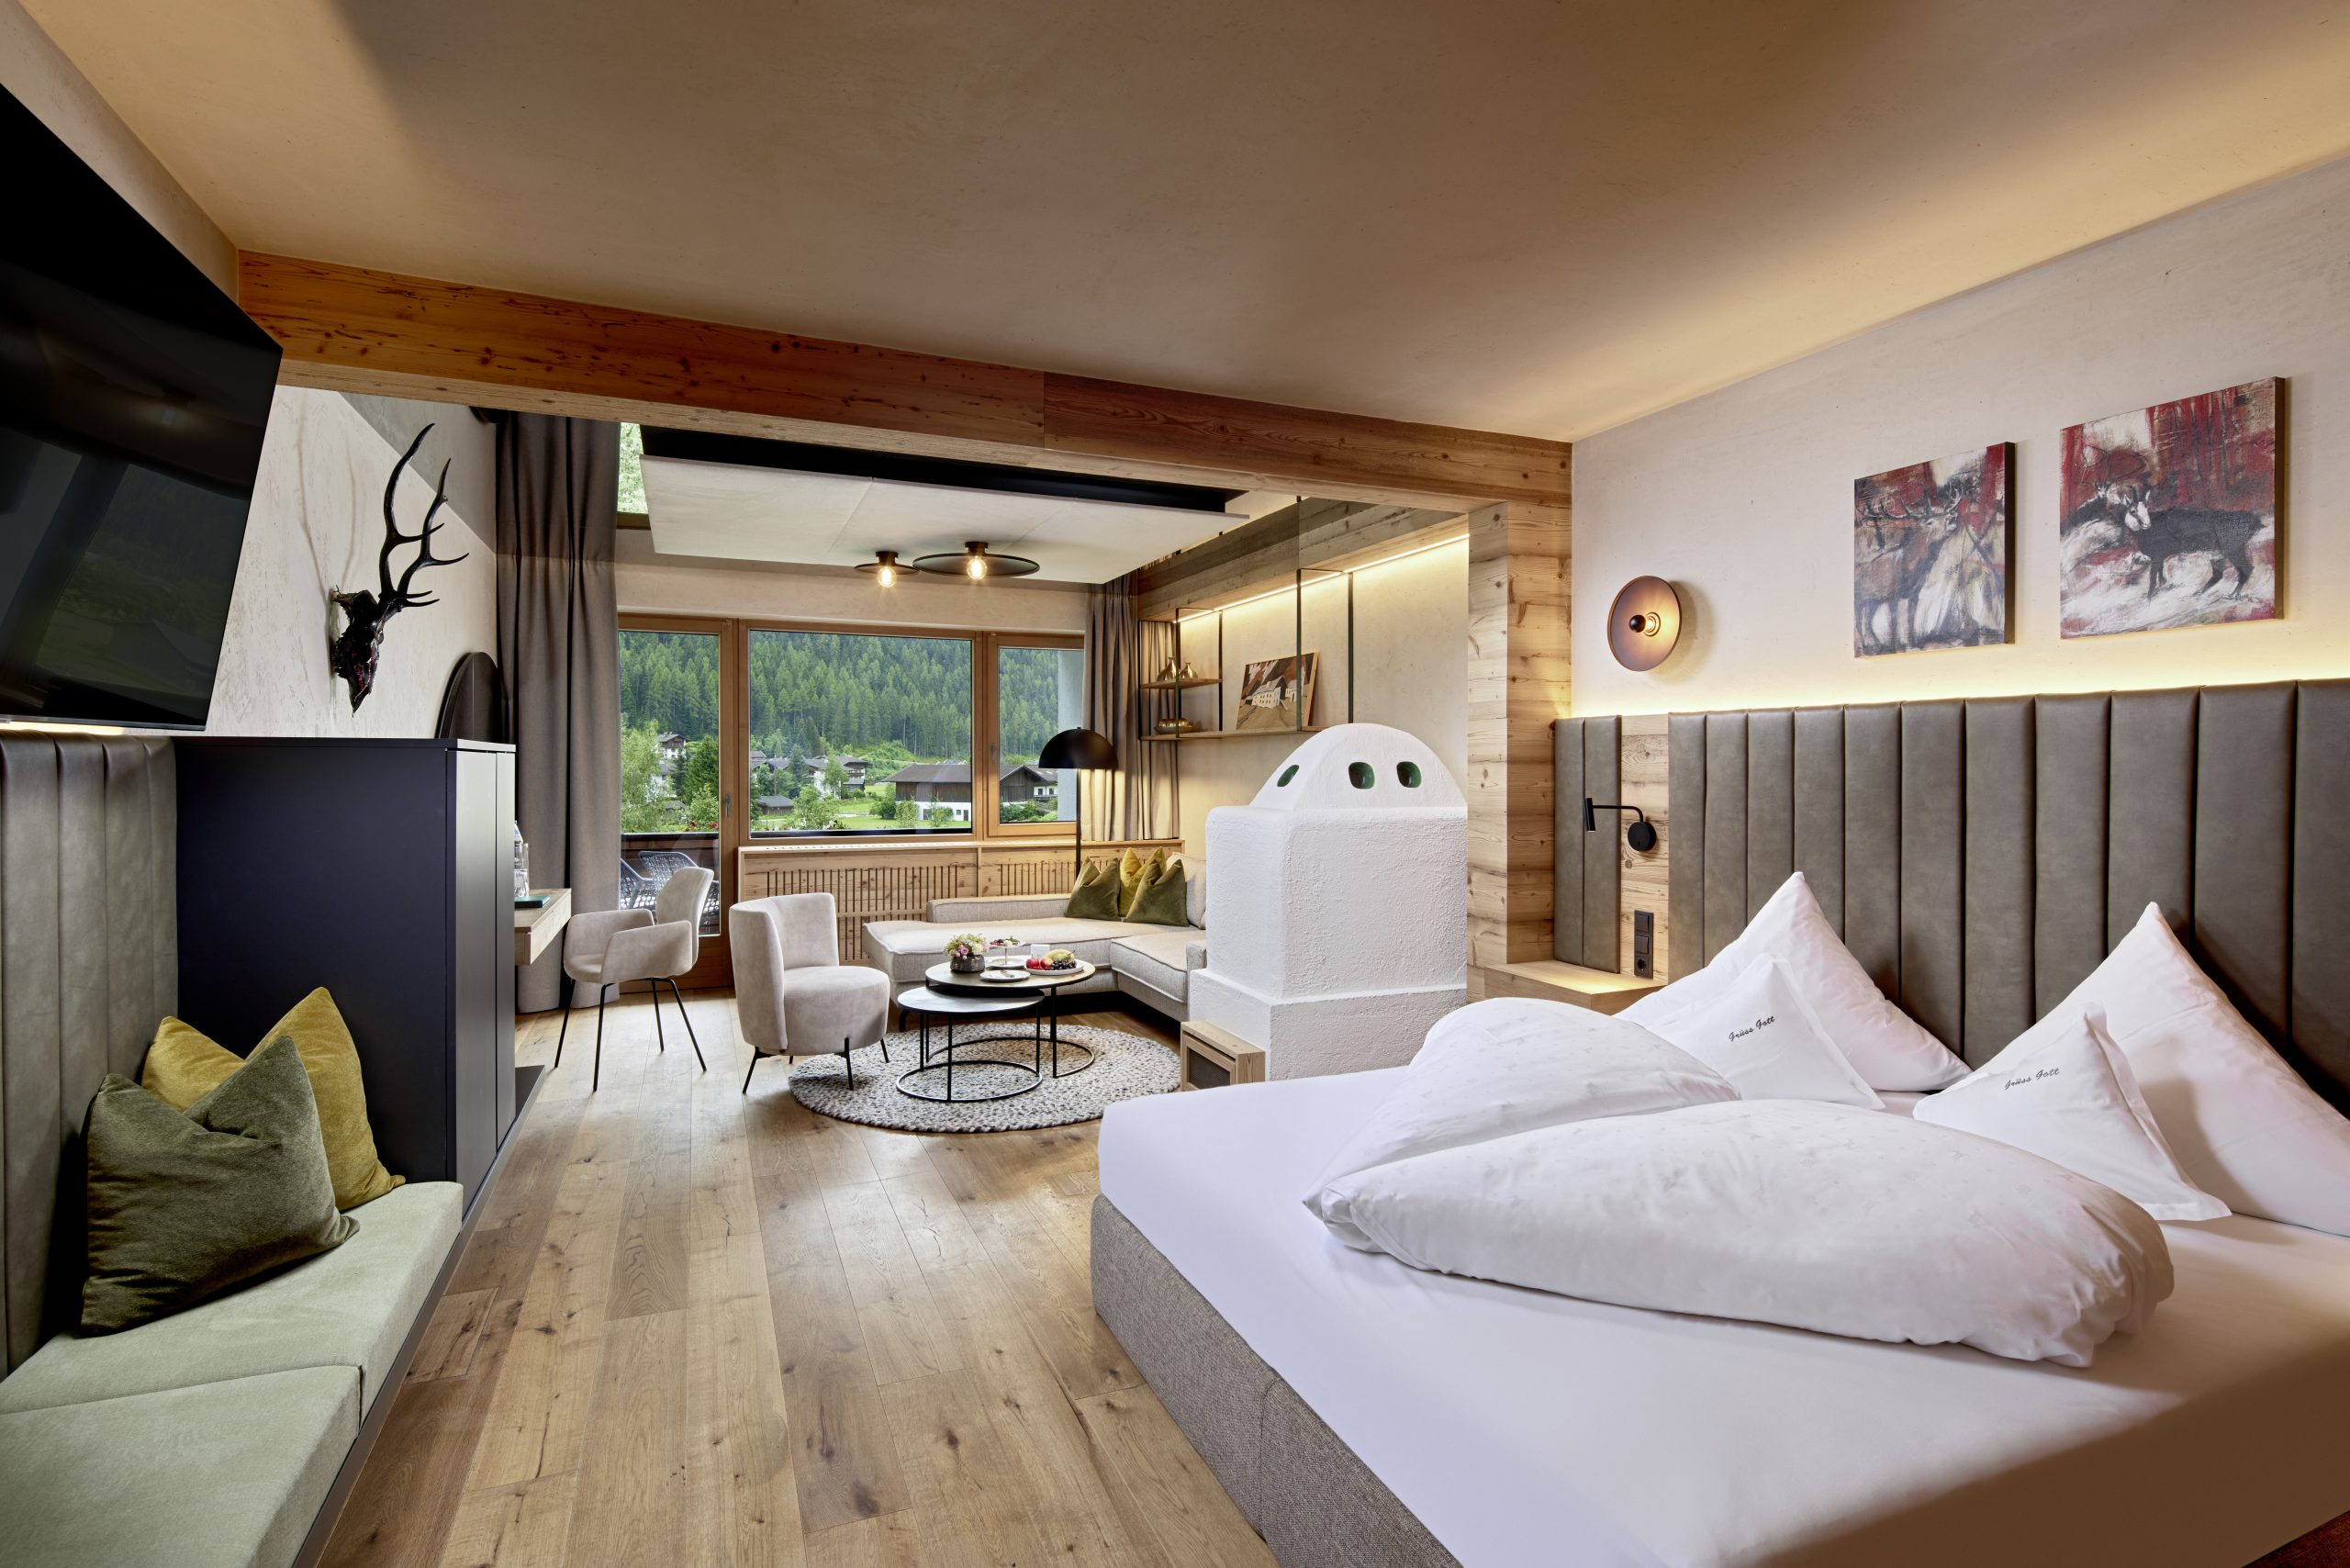 5-Sterne SPA-Hotel Jagdhof im Stubaital, Österreich eröffnet 30 neue Zimmer und Suiten